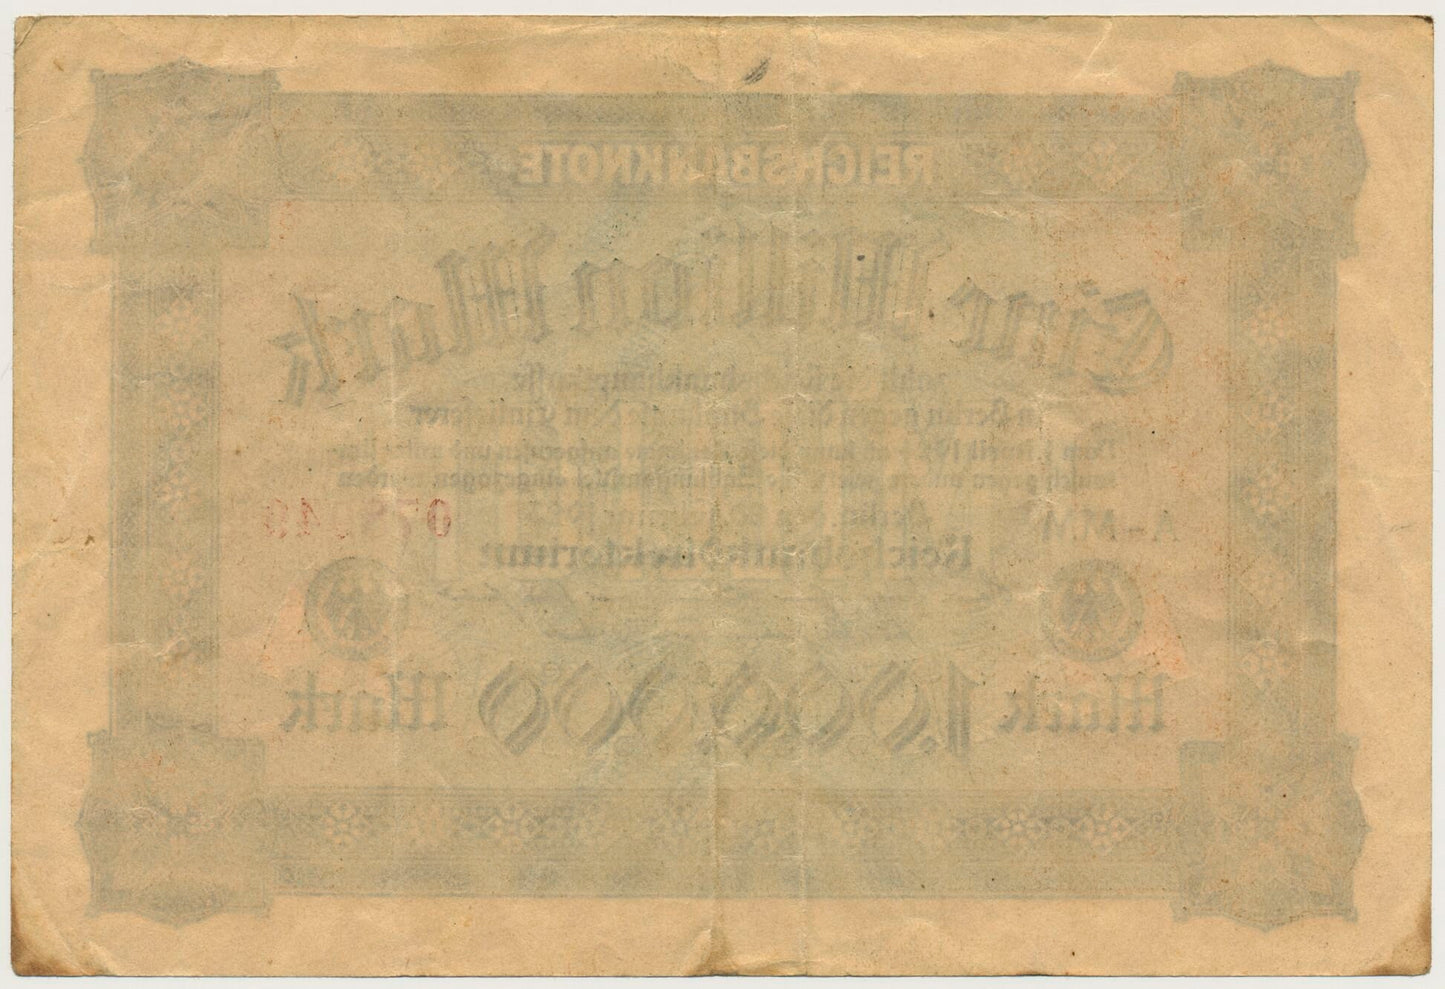 GERMANY P.86a 1923 1,000,000 Mark VF